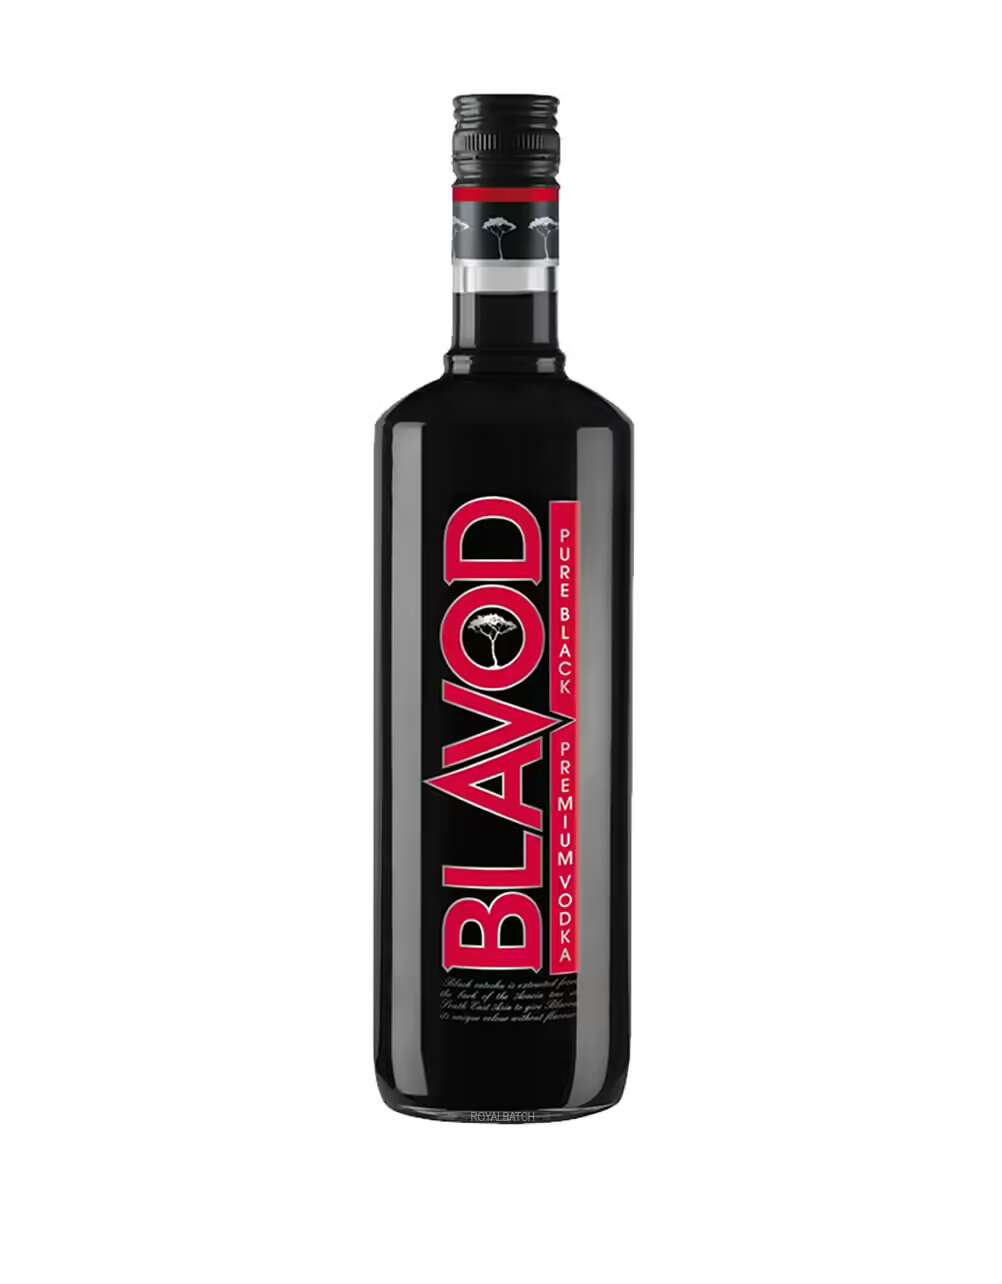 Blavod Pure Black Premium Vodka